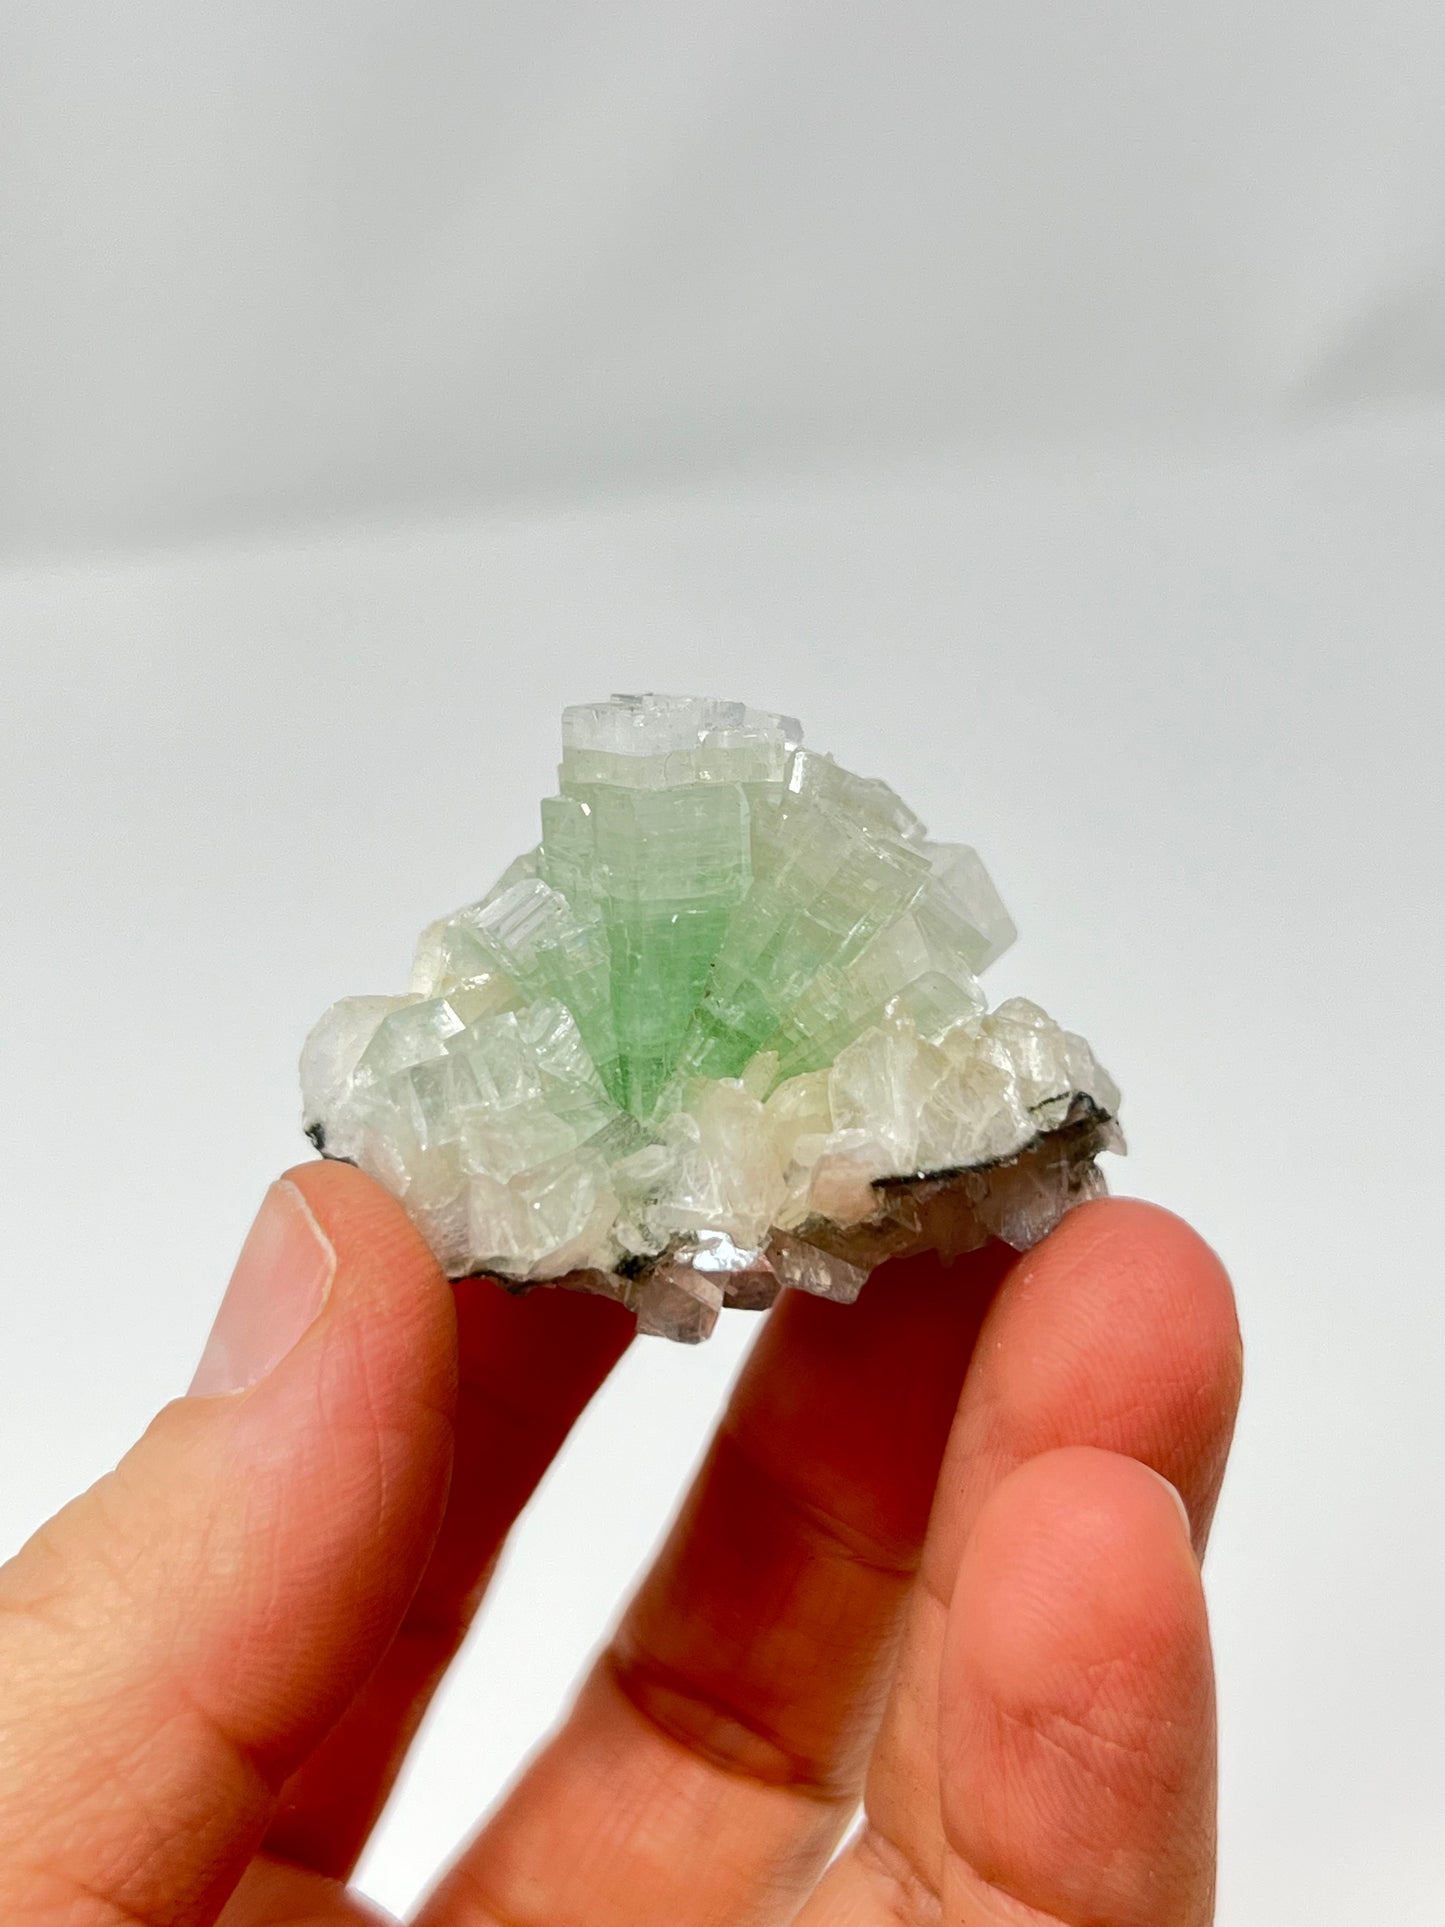 Green Apophyllite 'Disco Ball' Crystal, India